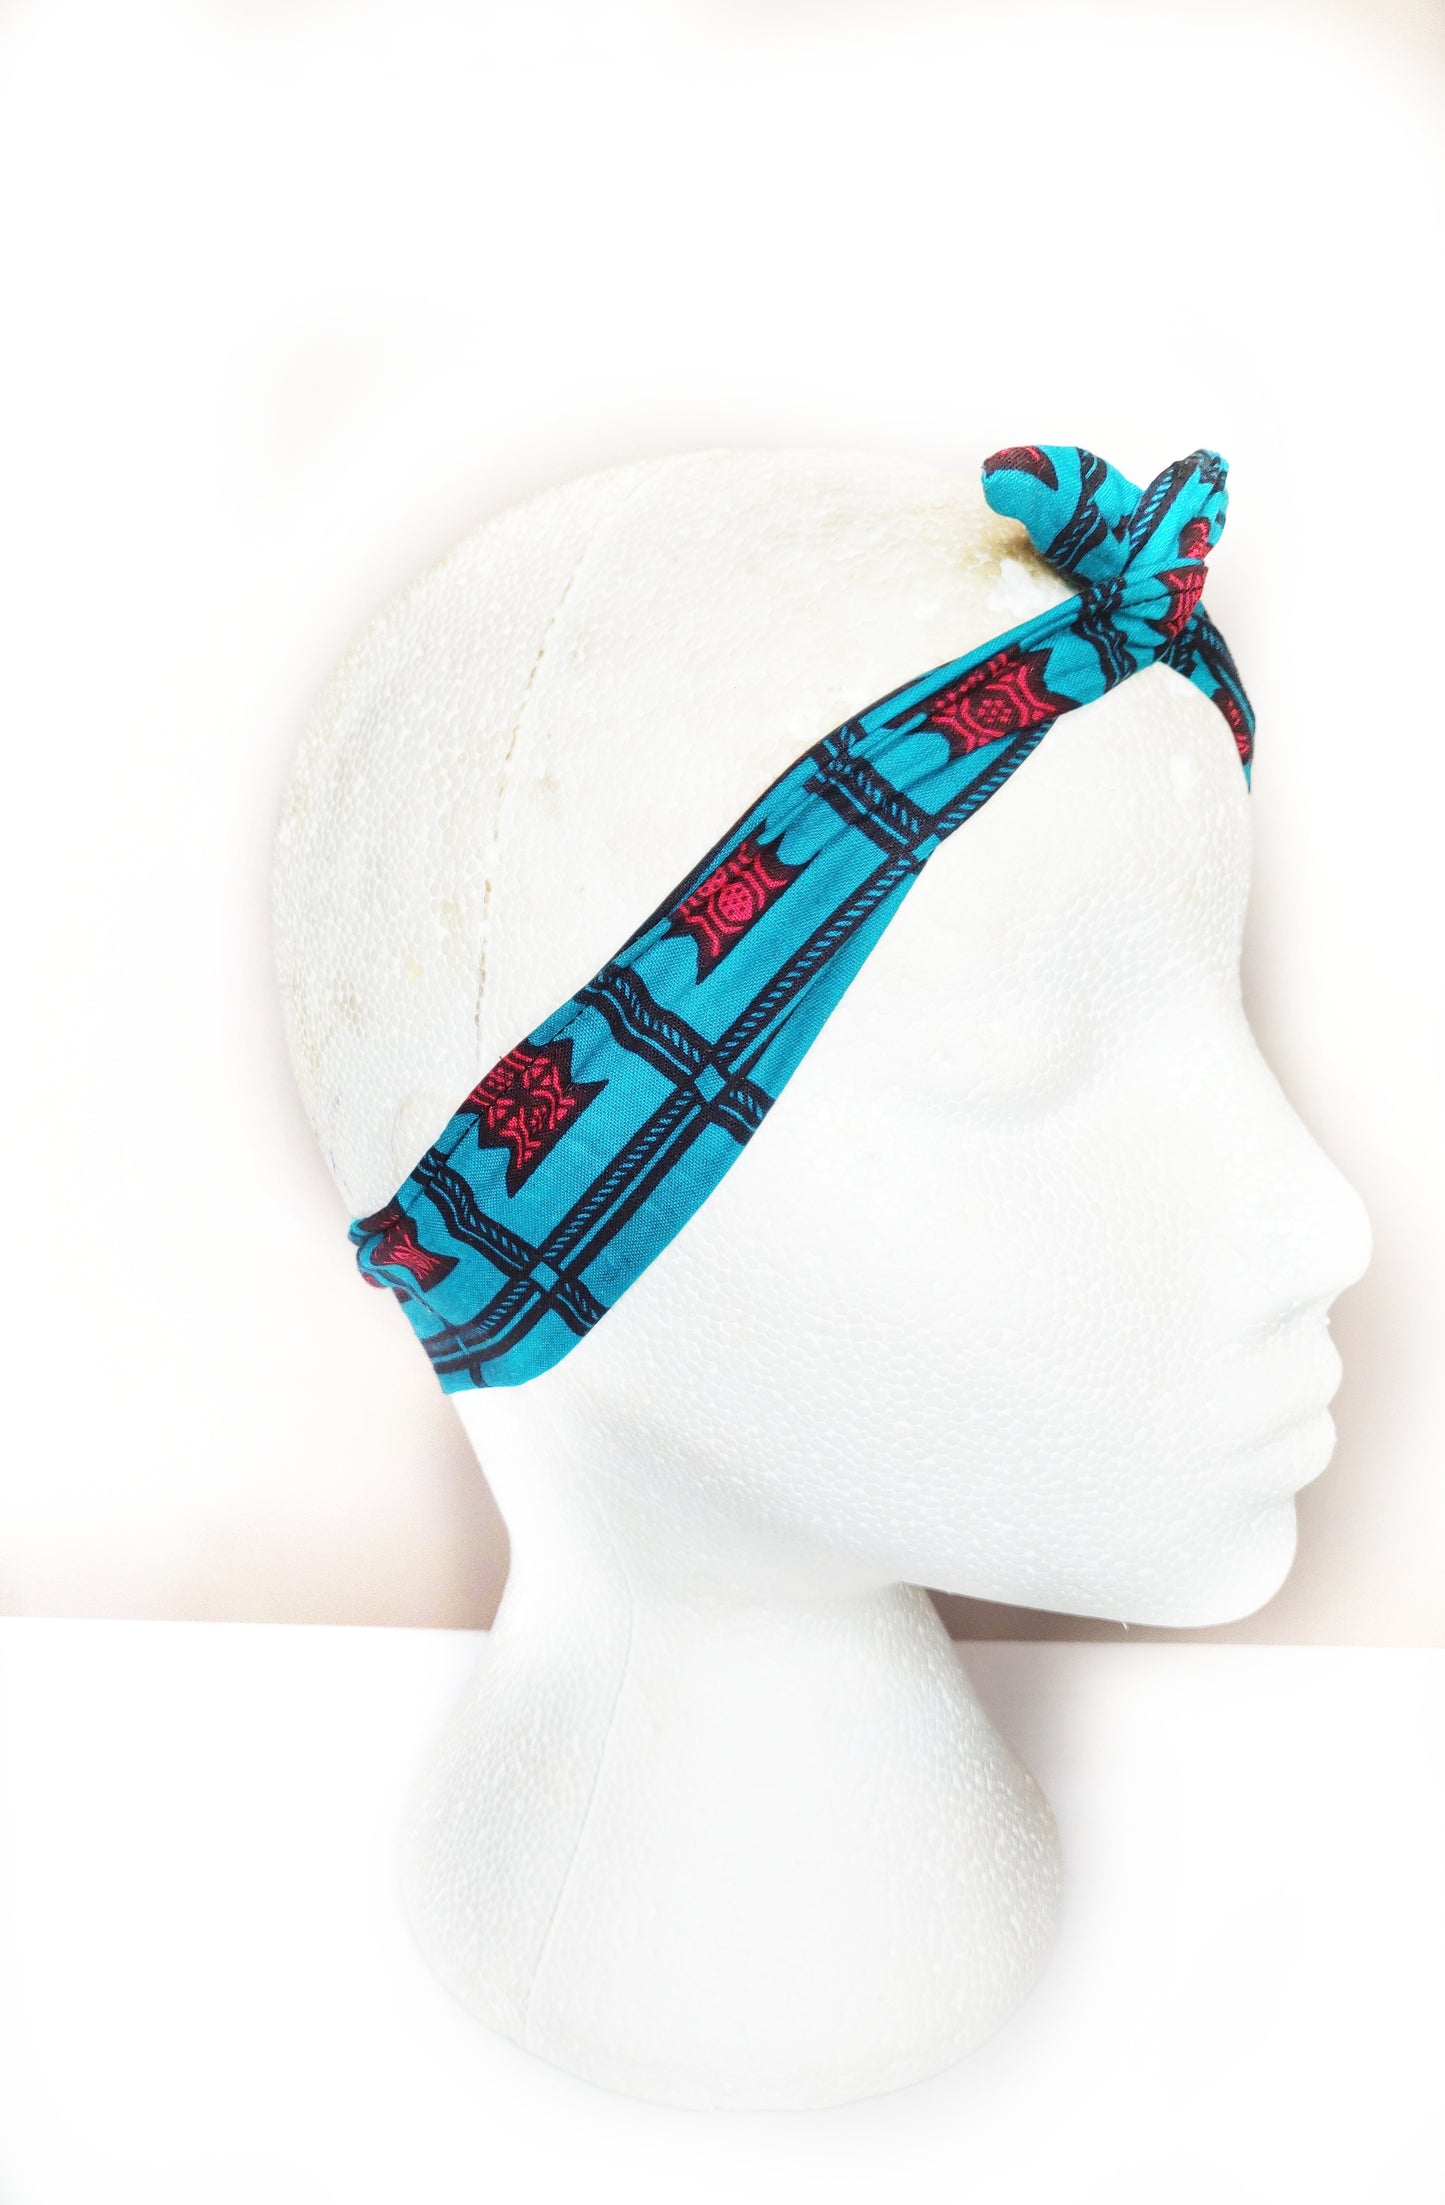 K A N I A - African Print Wired Headband